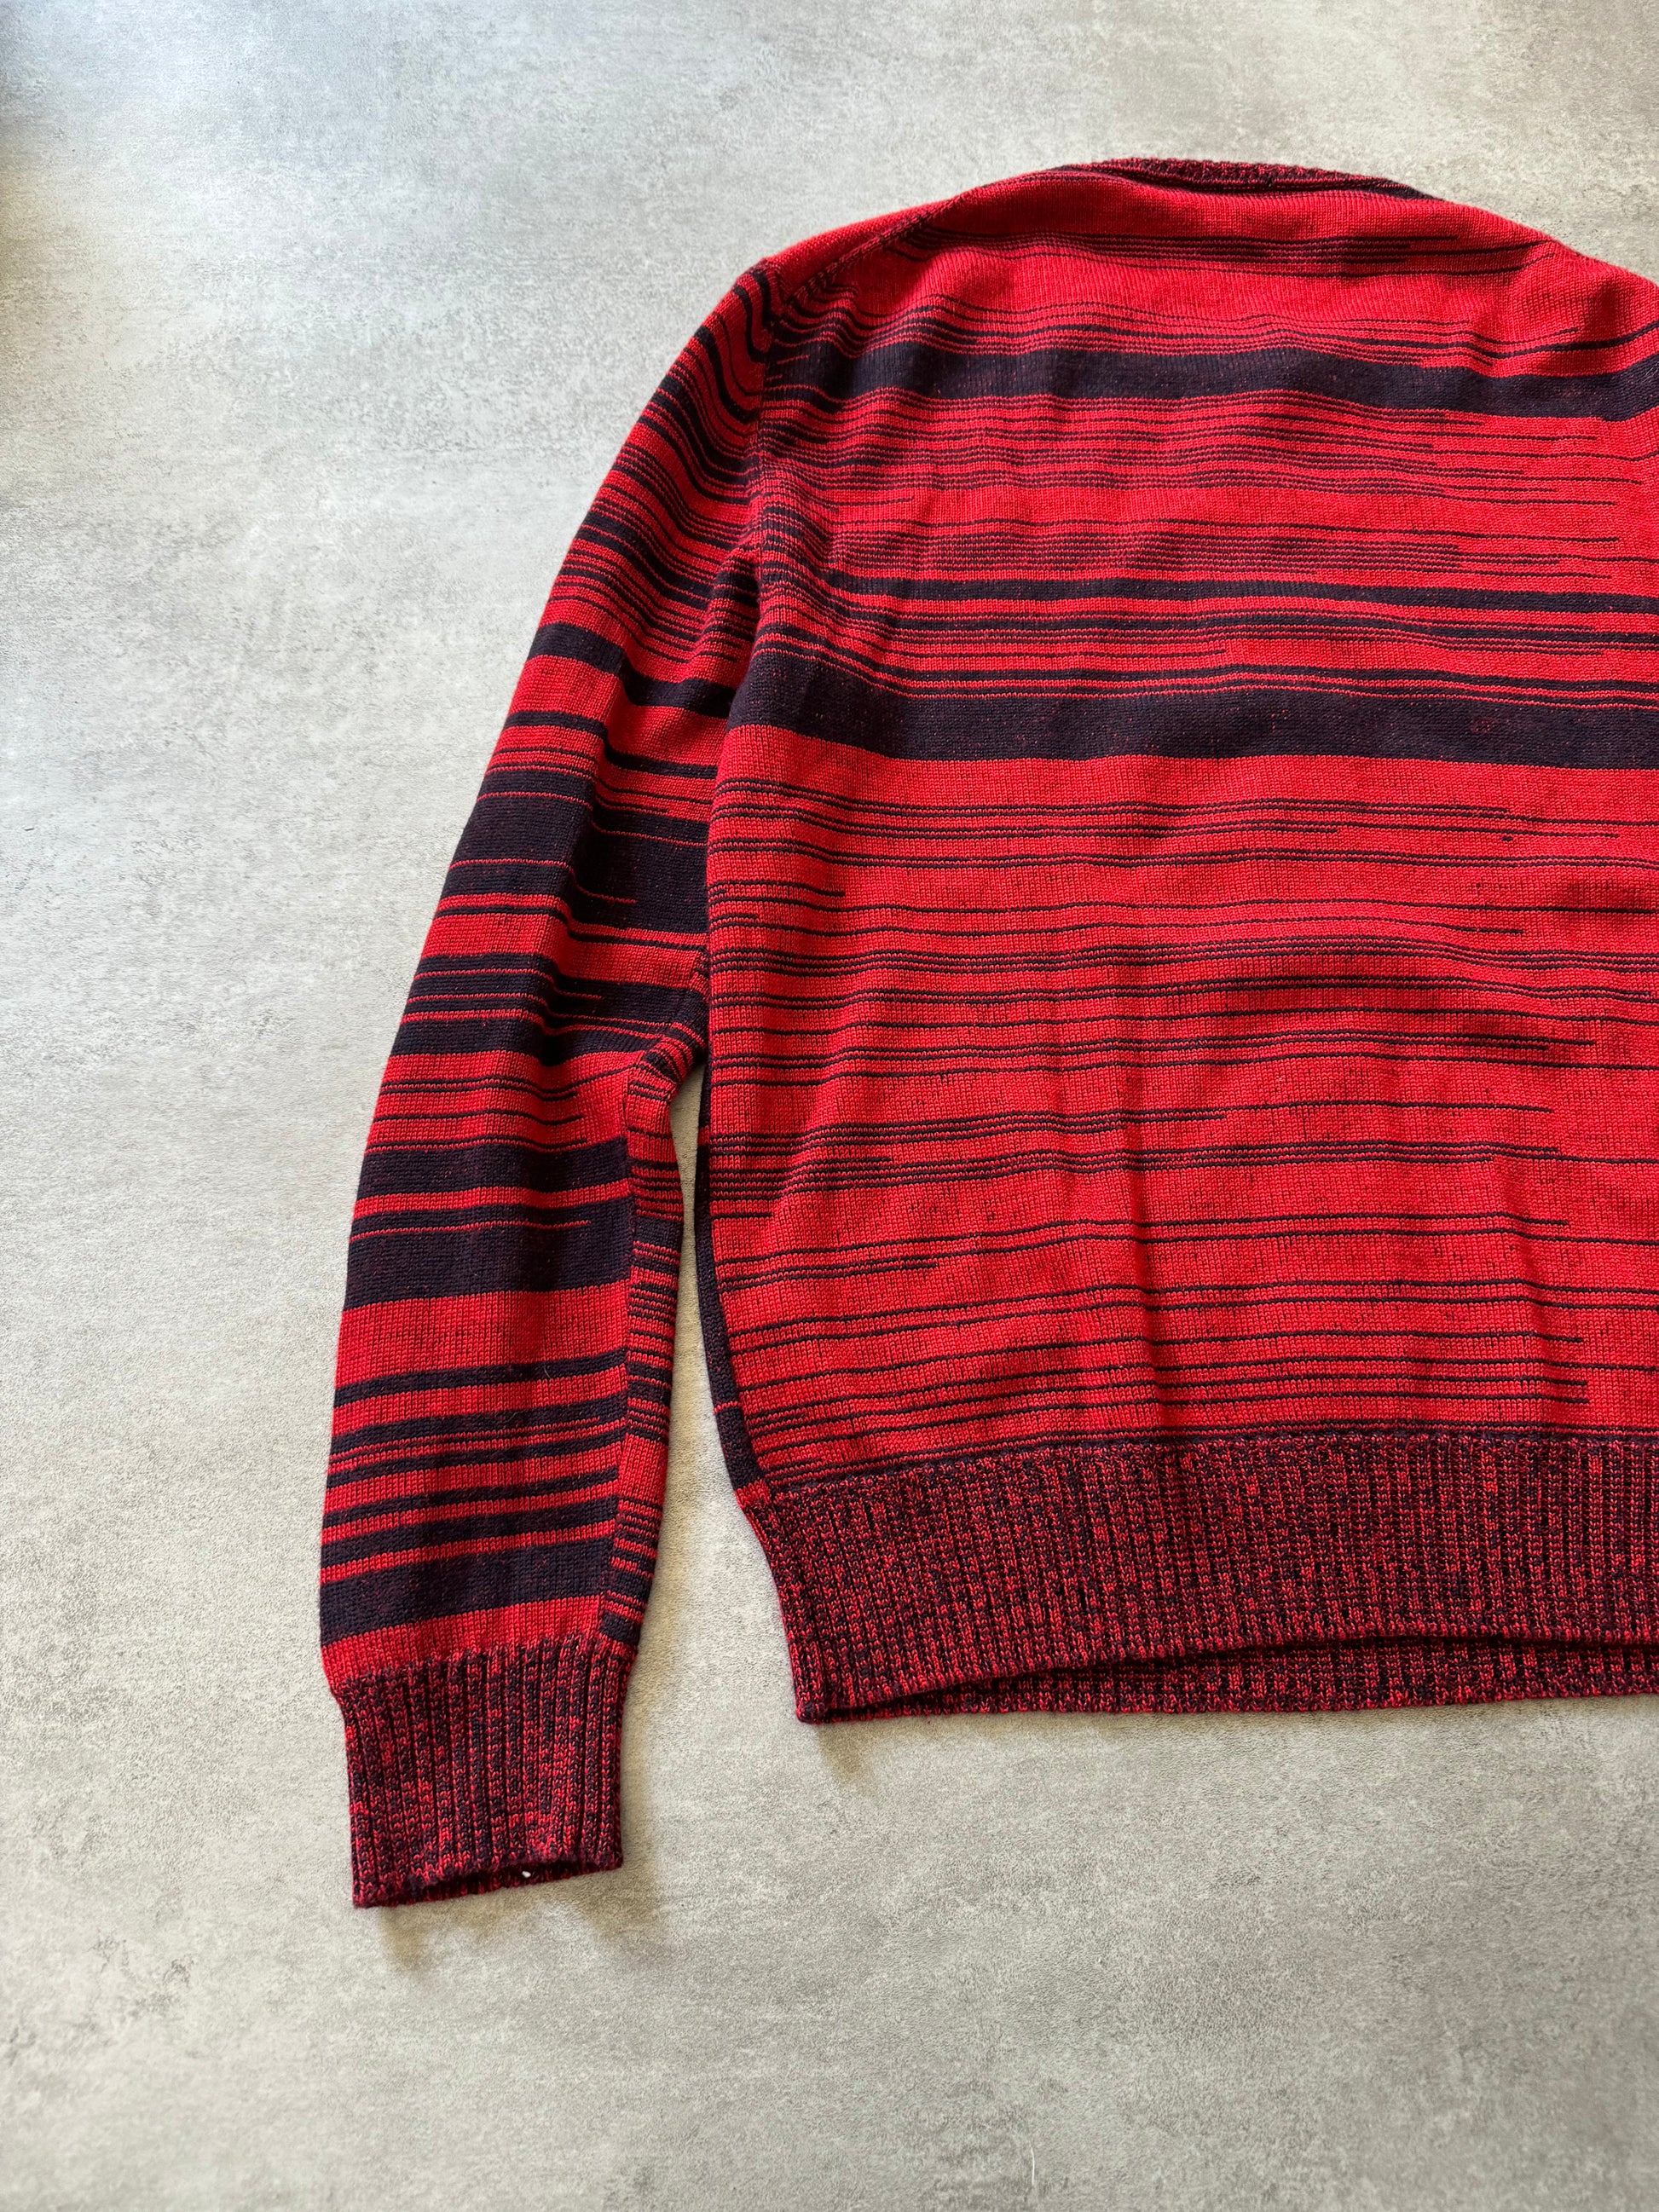 2010s Jil Sander Striped Devil Sweater  (L) - 5